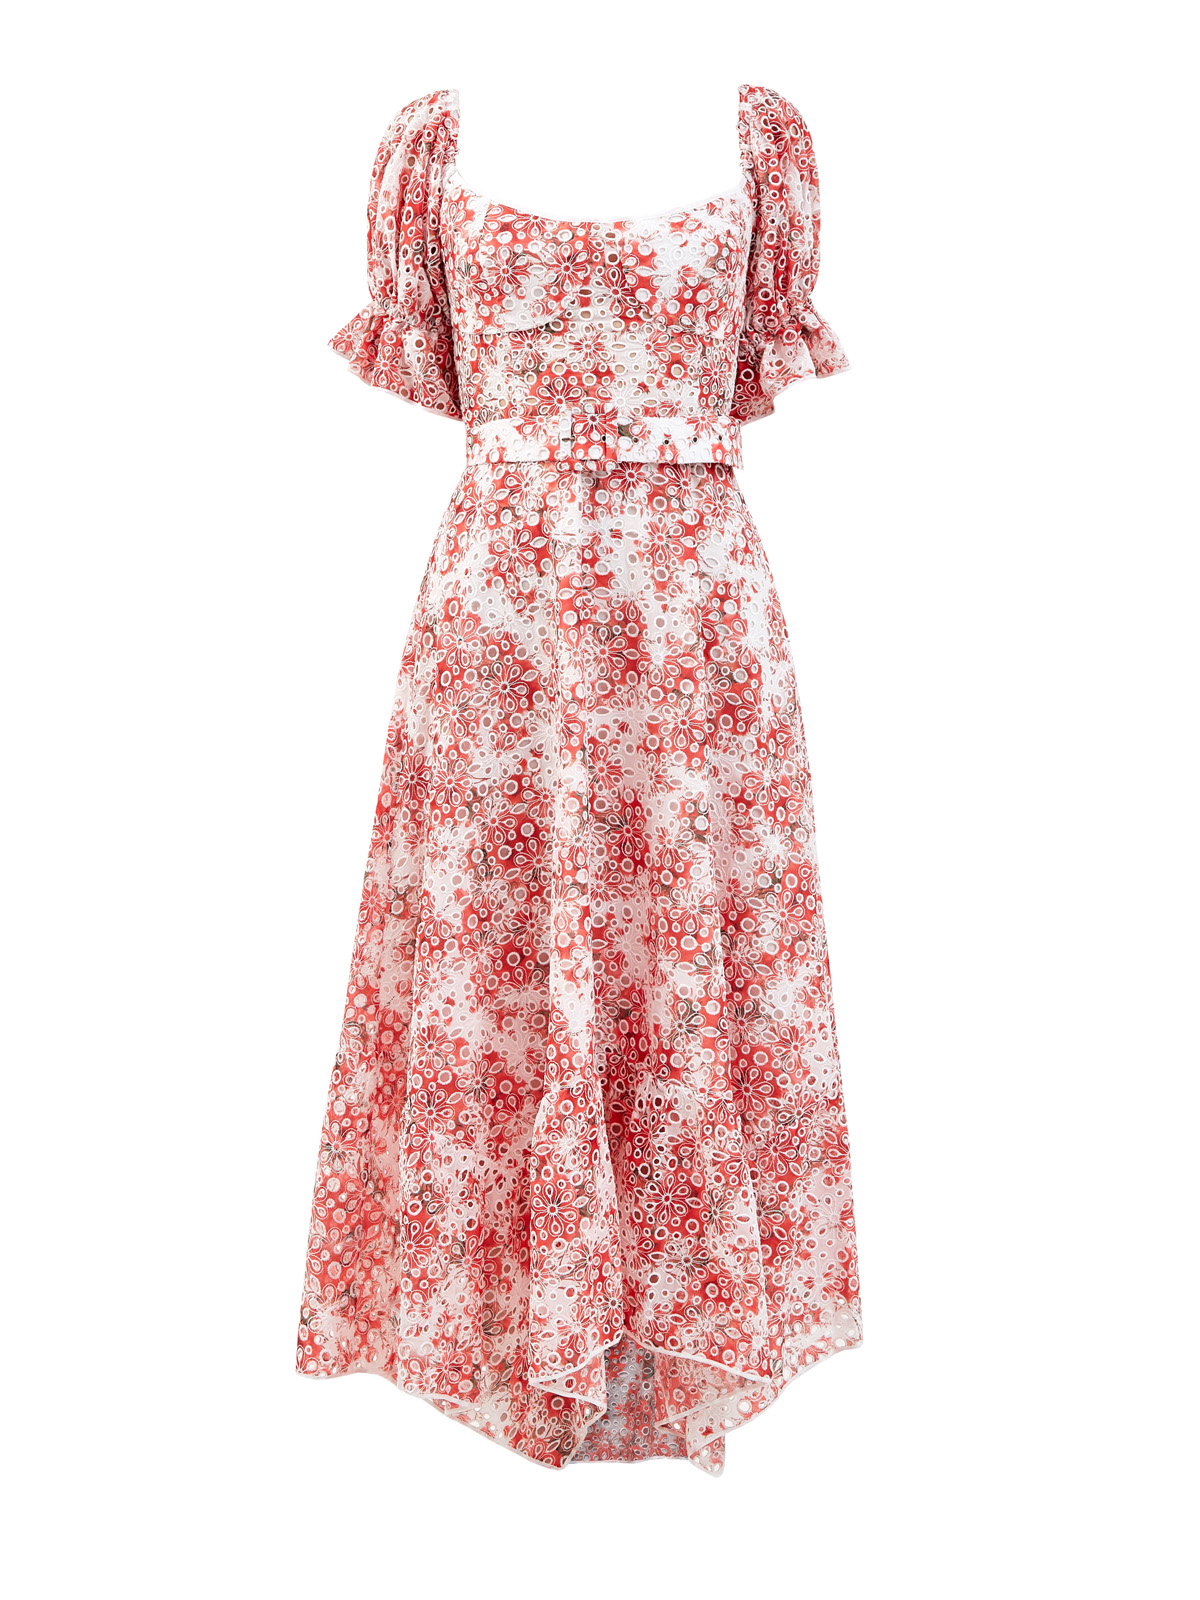 Воздушное платье Lana с цветочной вышивкой и поясом